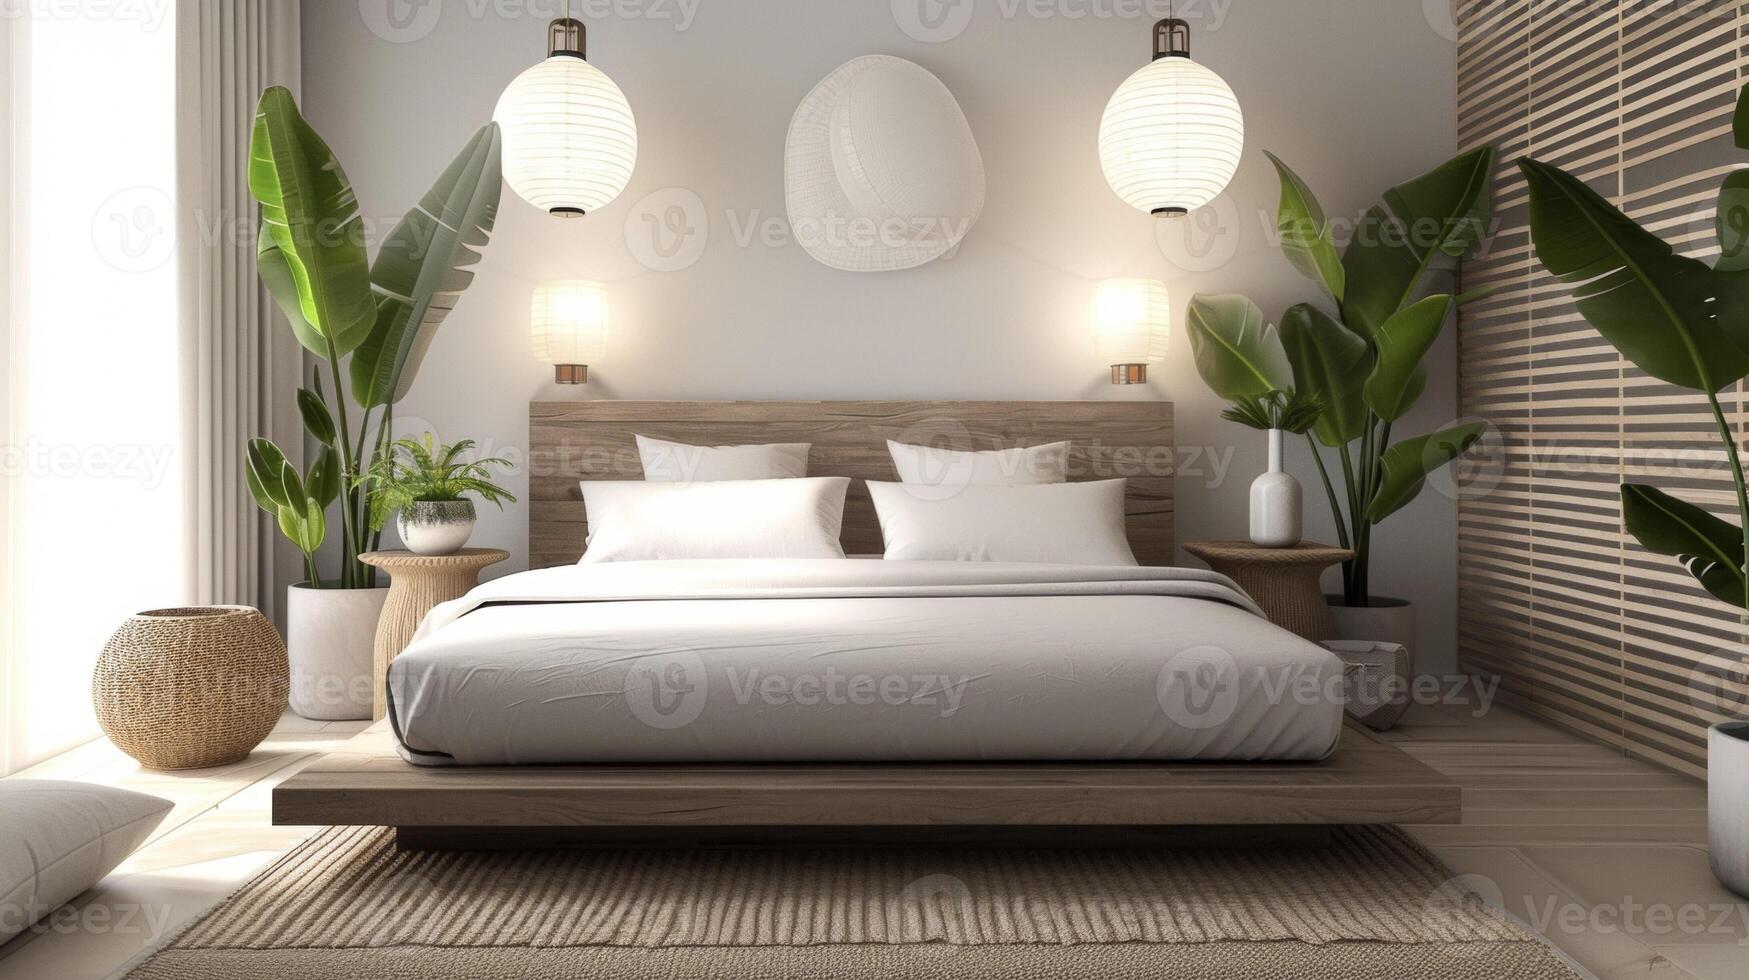 en modern sovrum med en blandning av japansk och scandinavian influenser terar en låg plattform säng papper lyktor och naturlig element tycka om växter och en bambu matta. de övergripande foto